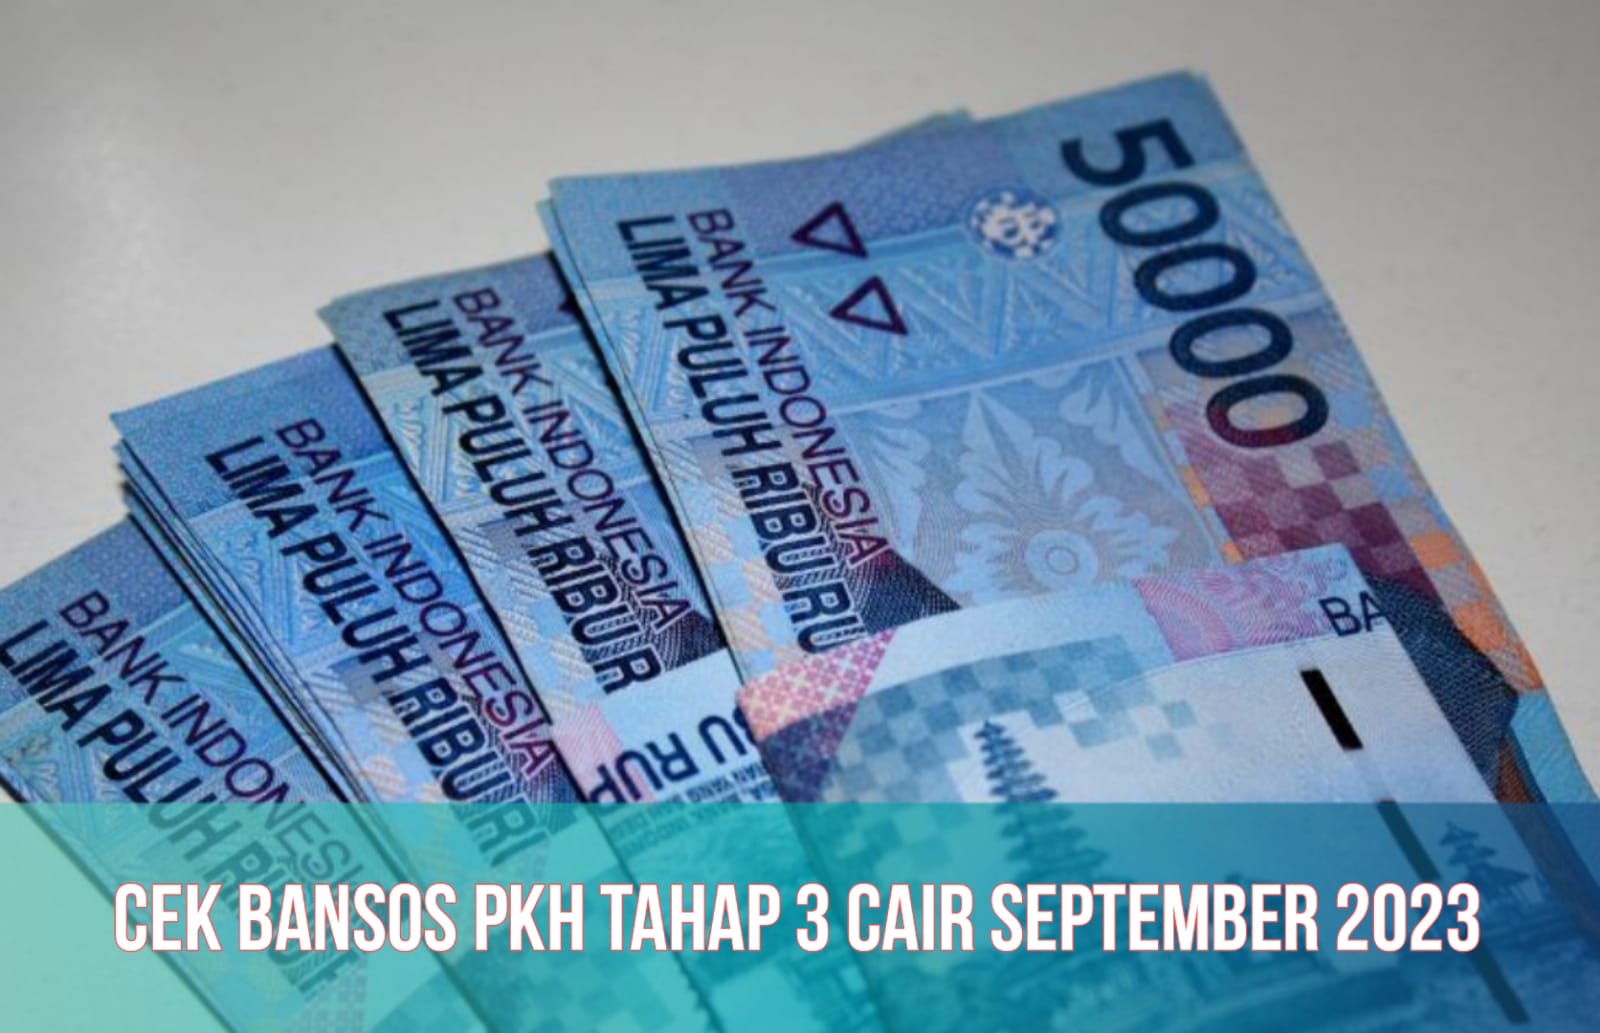 Cek Jadwal Bansos PKH 2023, Tahap 4 Siap Cair September, Penerima Dapat Bantuan hingga Rp750.000